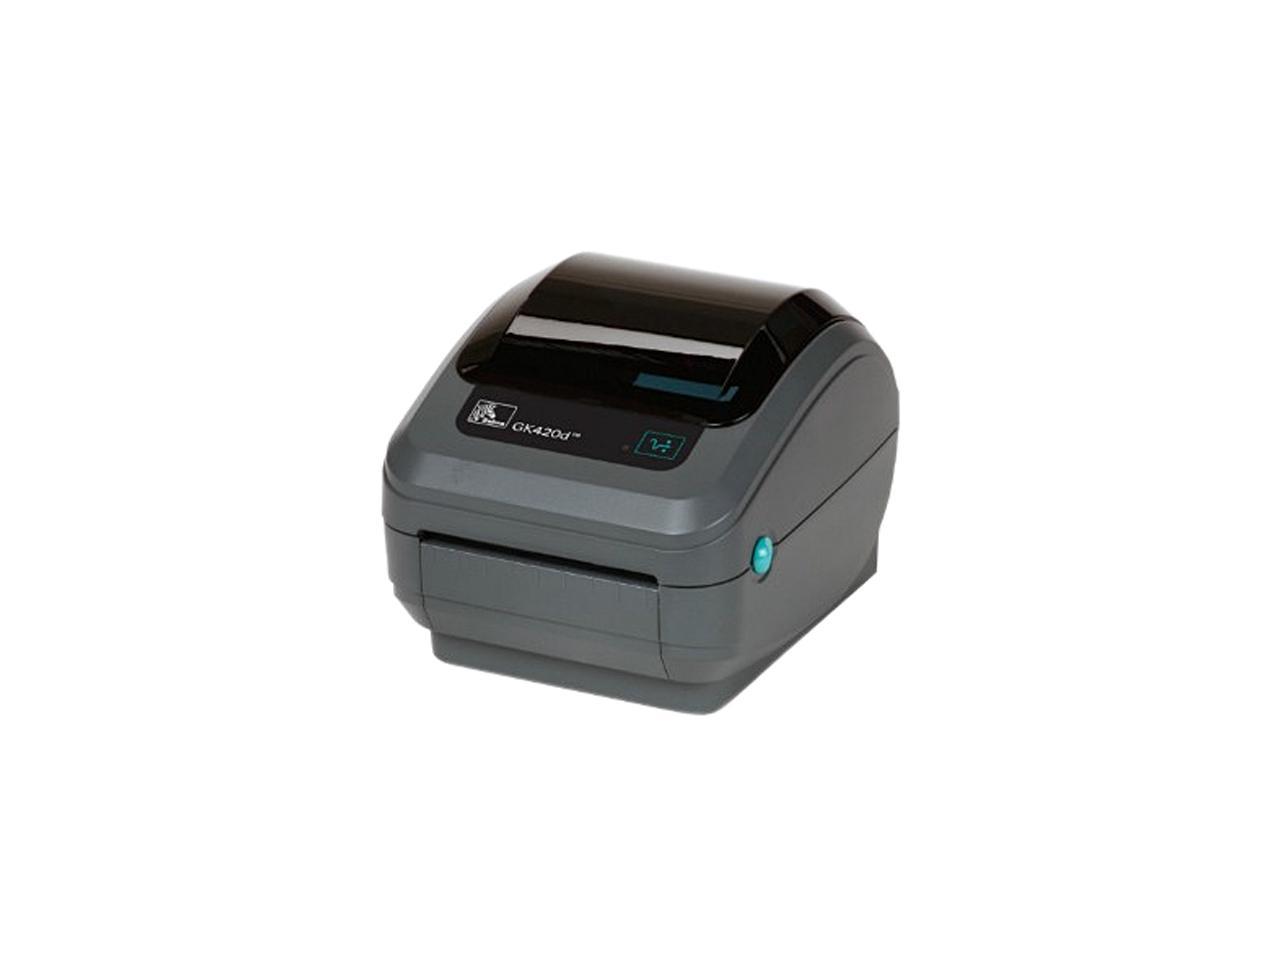 Zebra GK-420d label printer